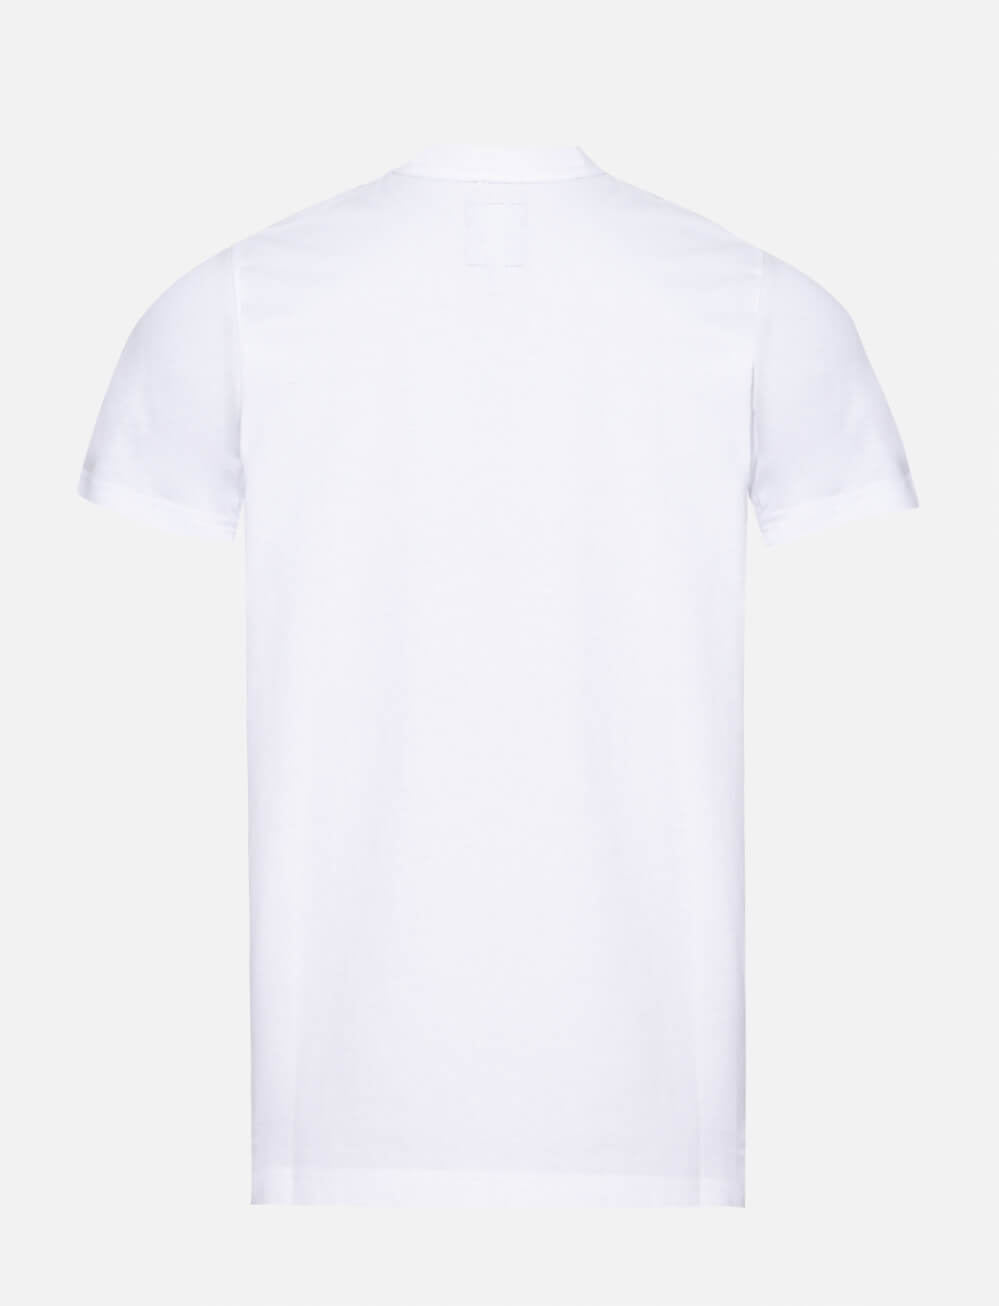 SVNS Perth Event T-Shirt - White